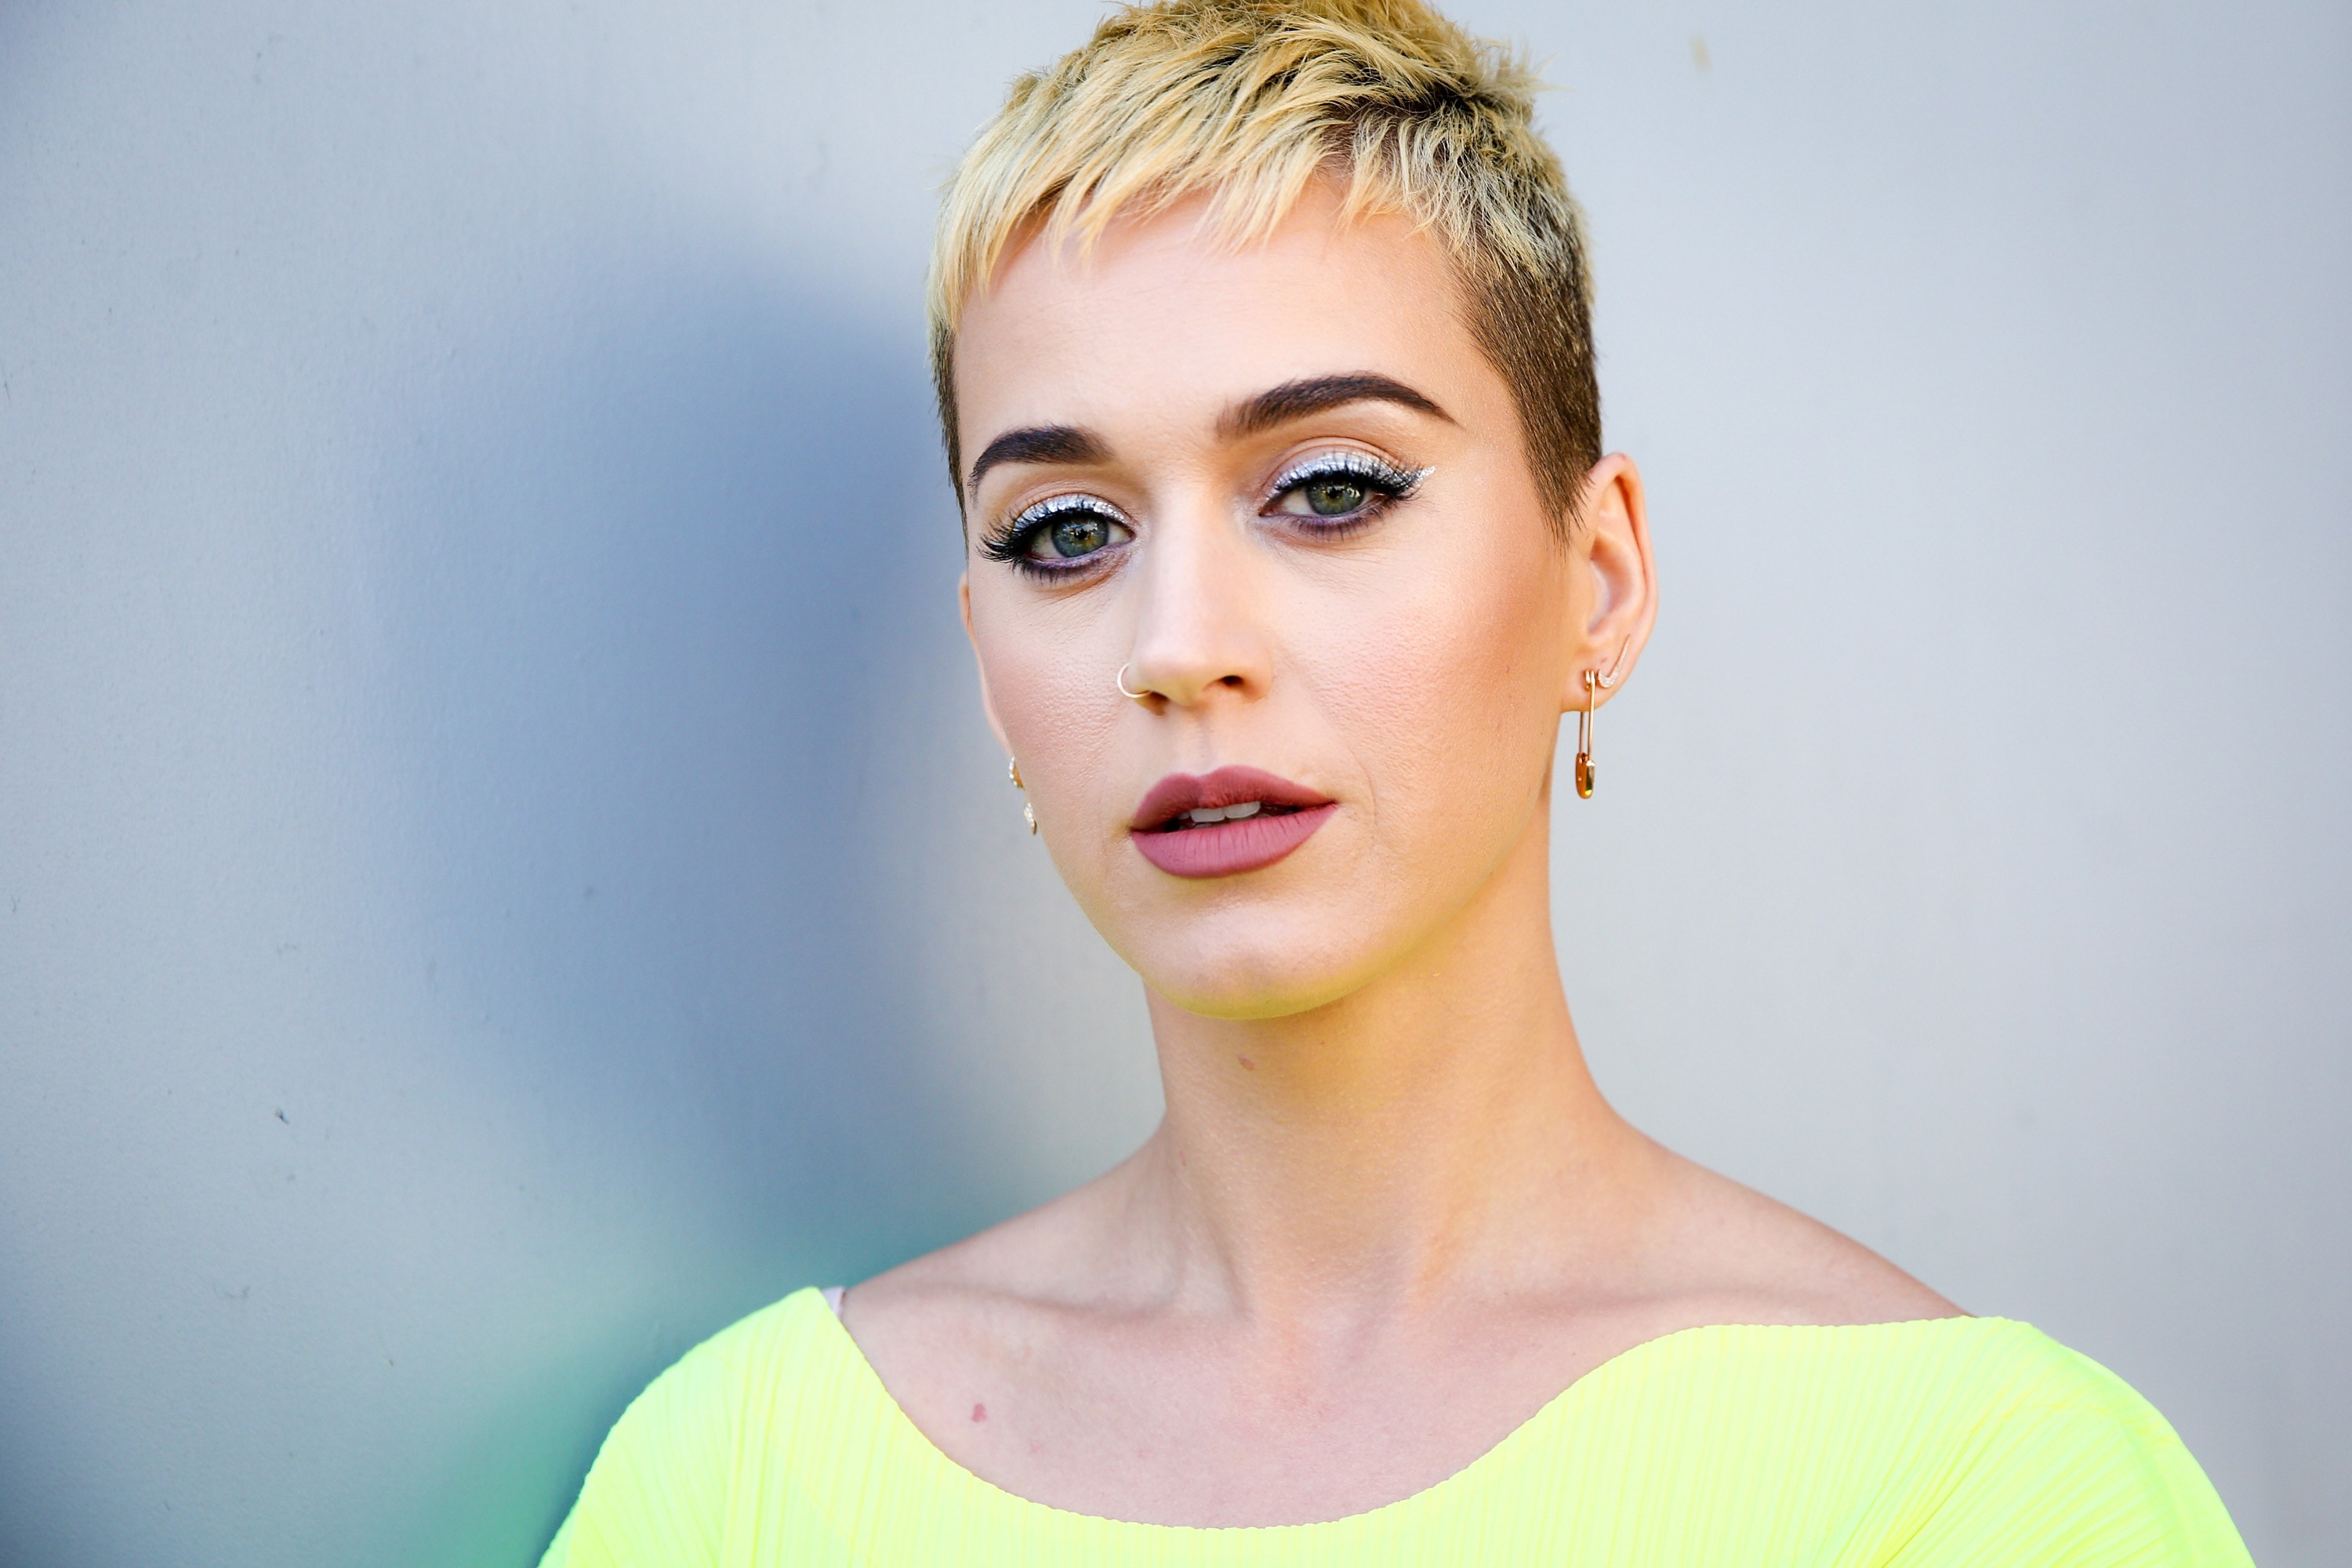 Katy Perry deja que la estrella brasileña Gretchen la reemplace en el Lyric Video de “Swish Swish”